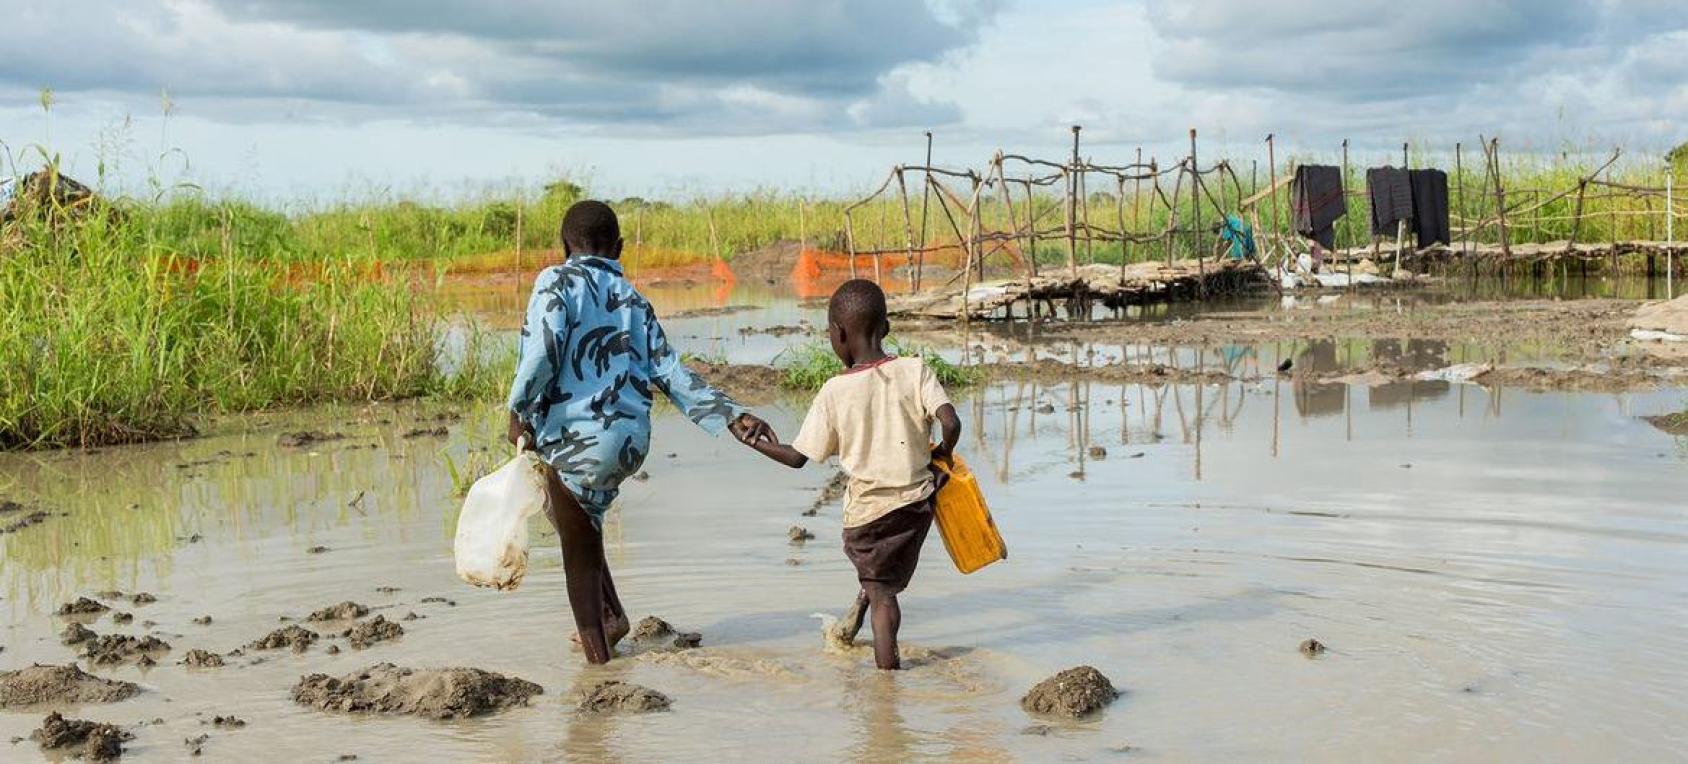 Des enfants marchent dans une zone inondée au Soudan du Sud.